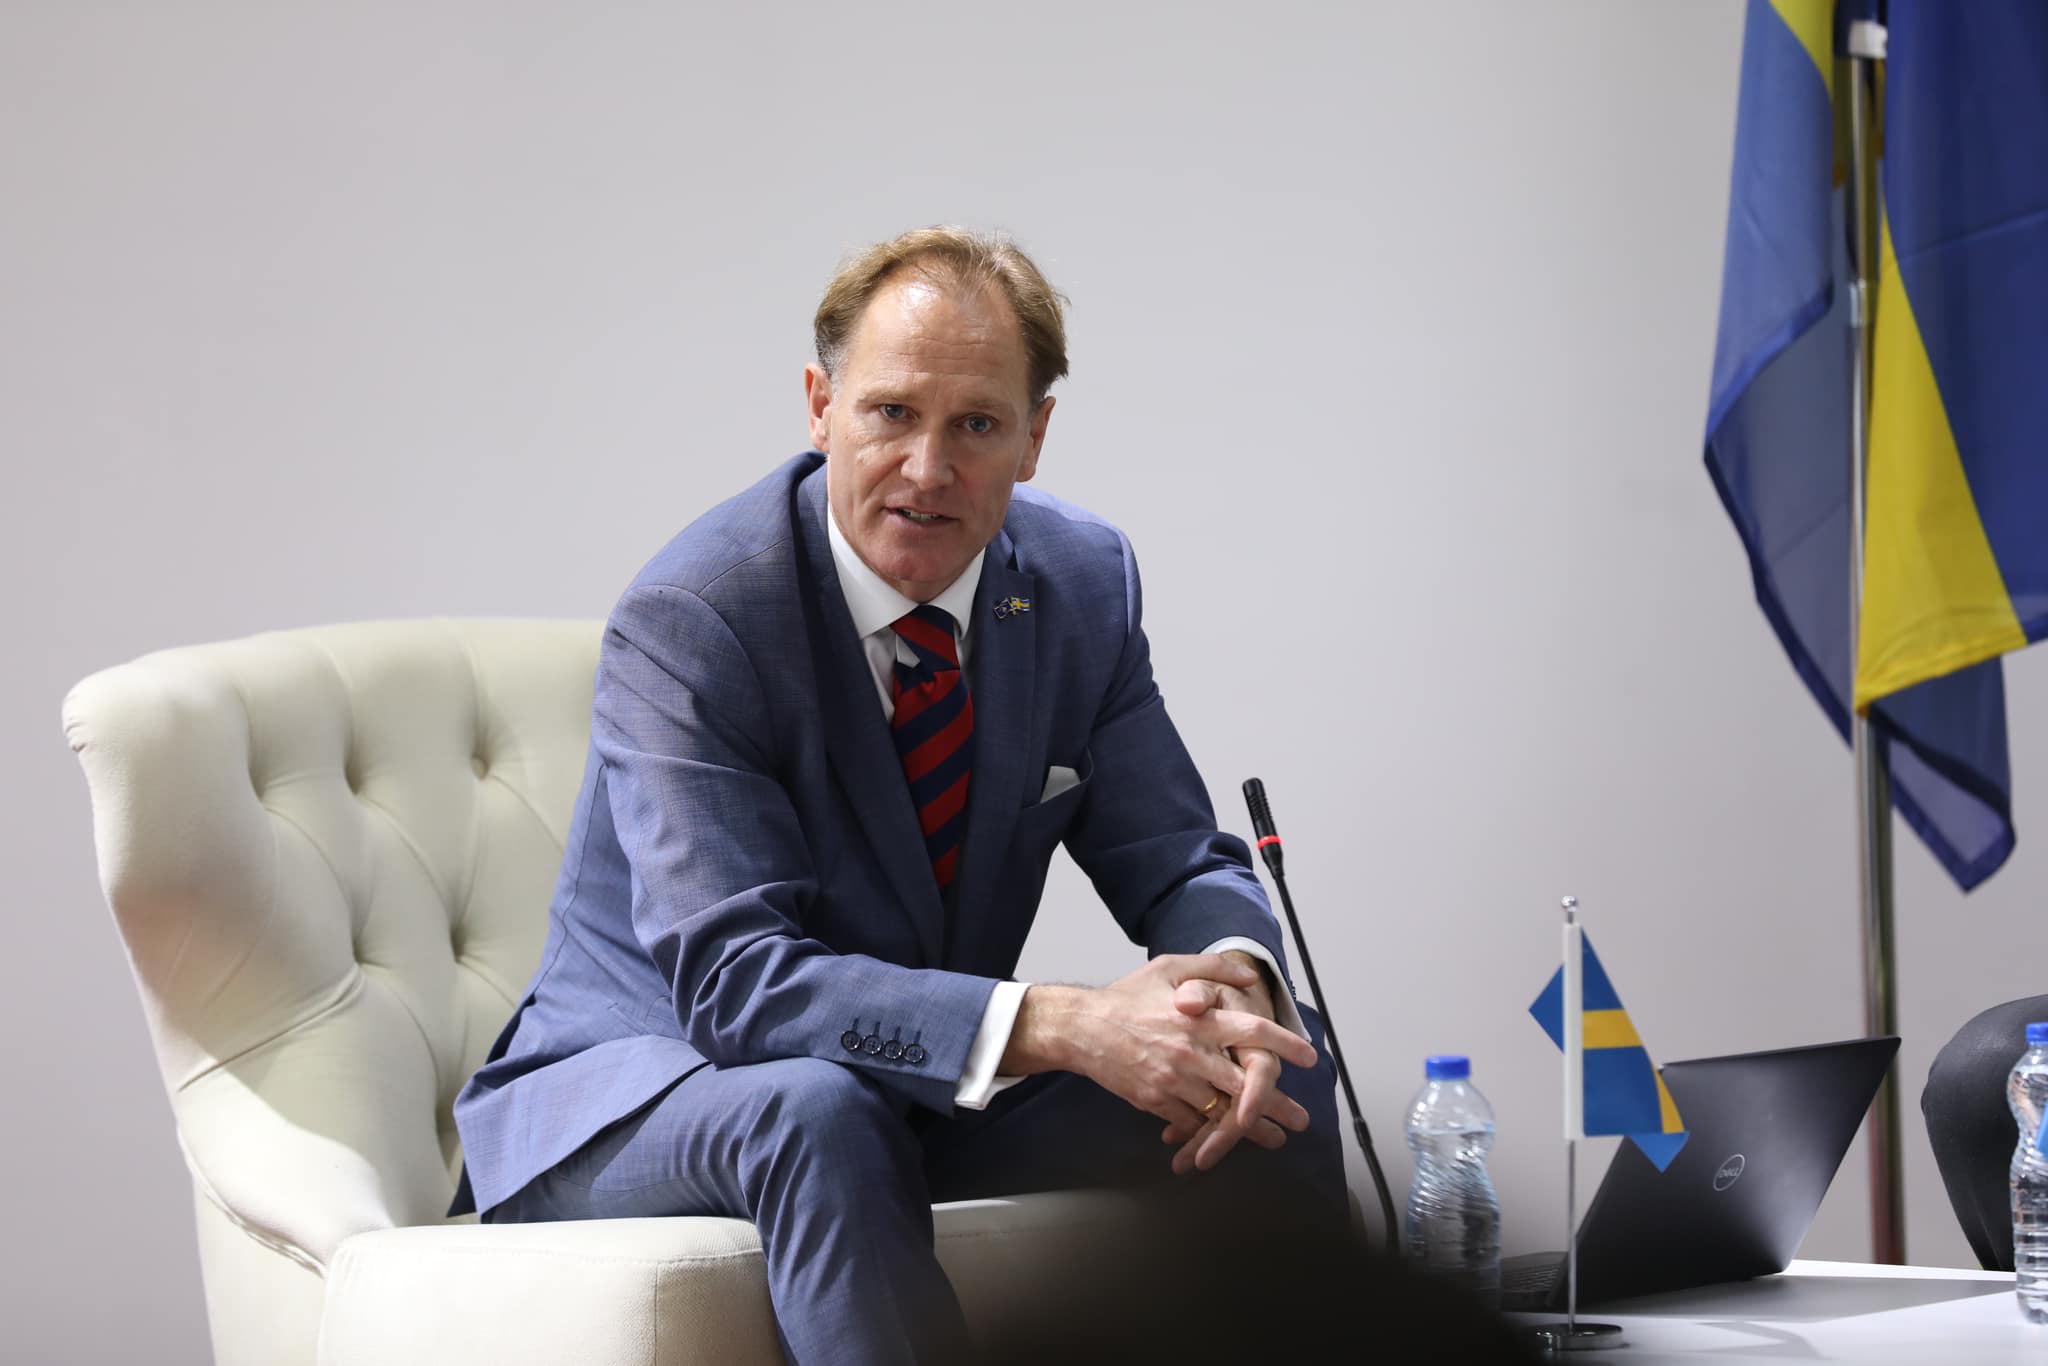 Ambasadori suedez në Kosovë: Marrëveshja jo domosdoshmërisht duhet nënshkruar